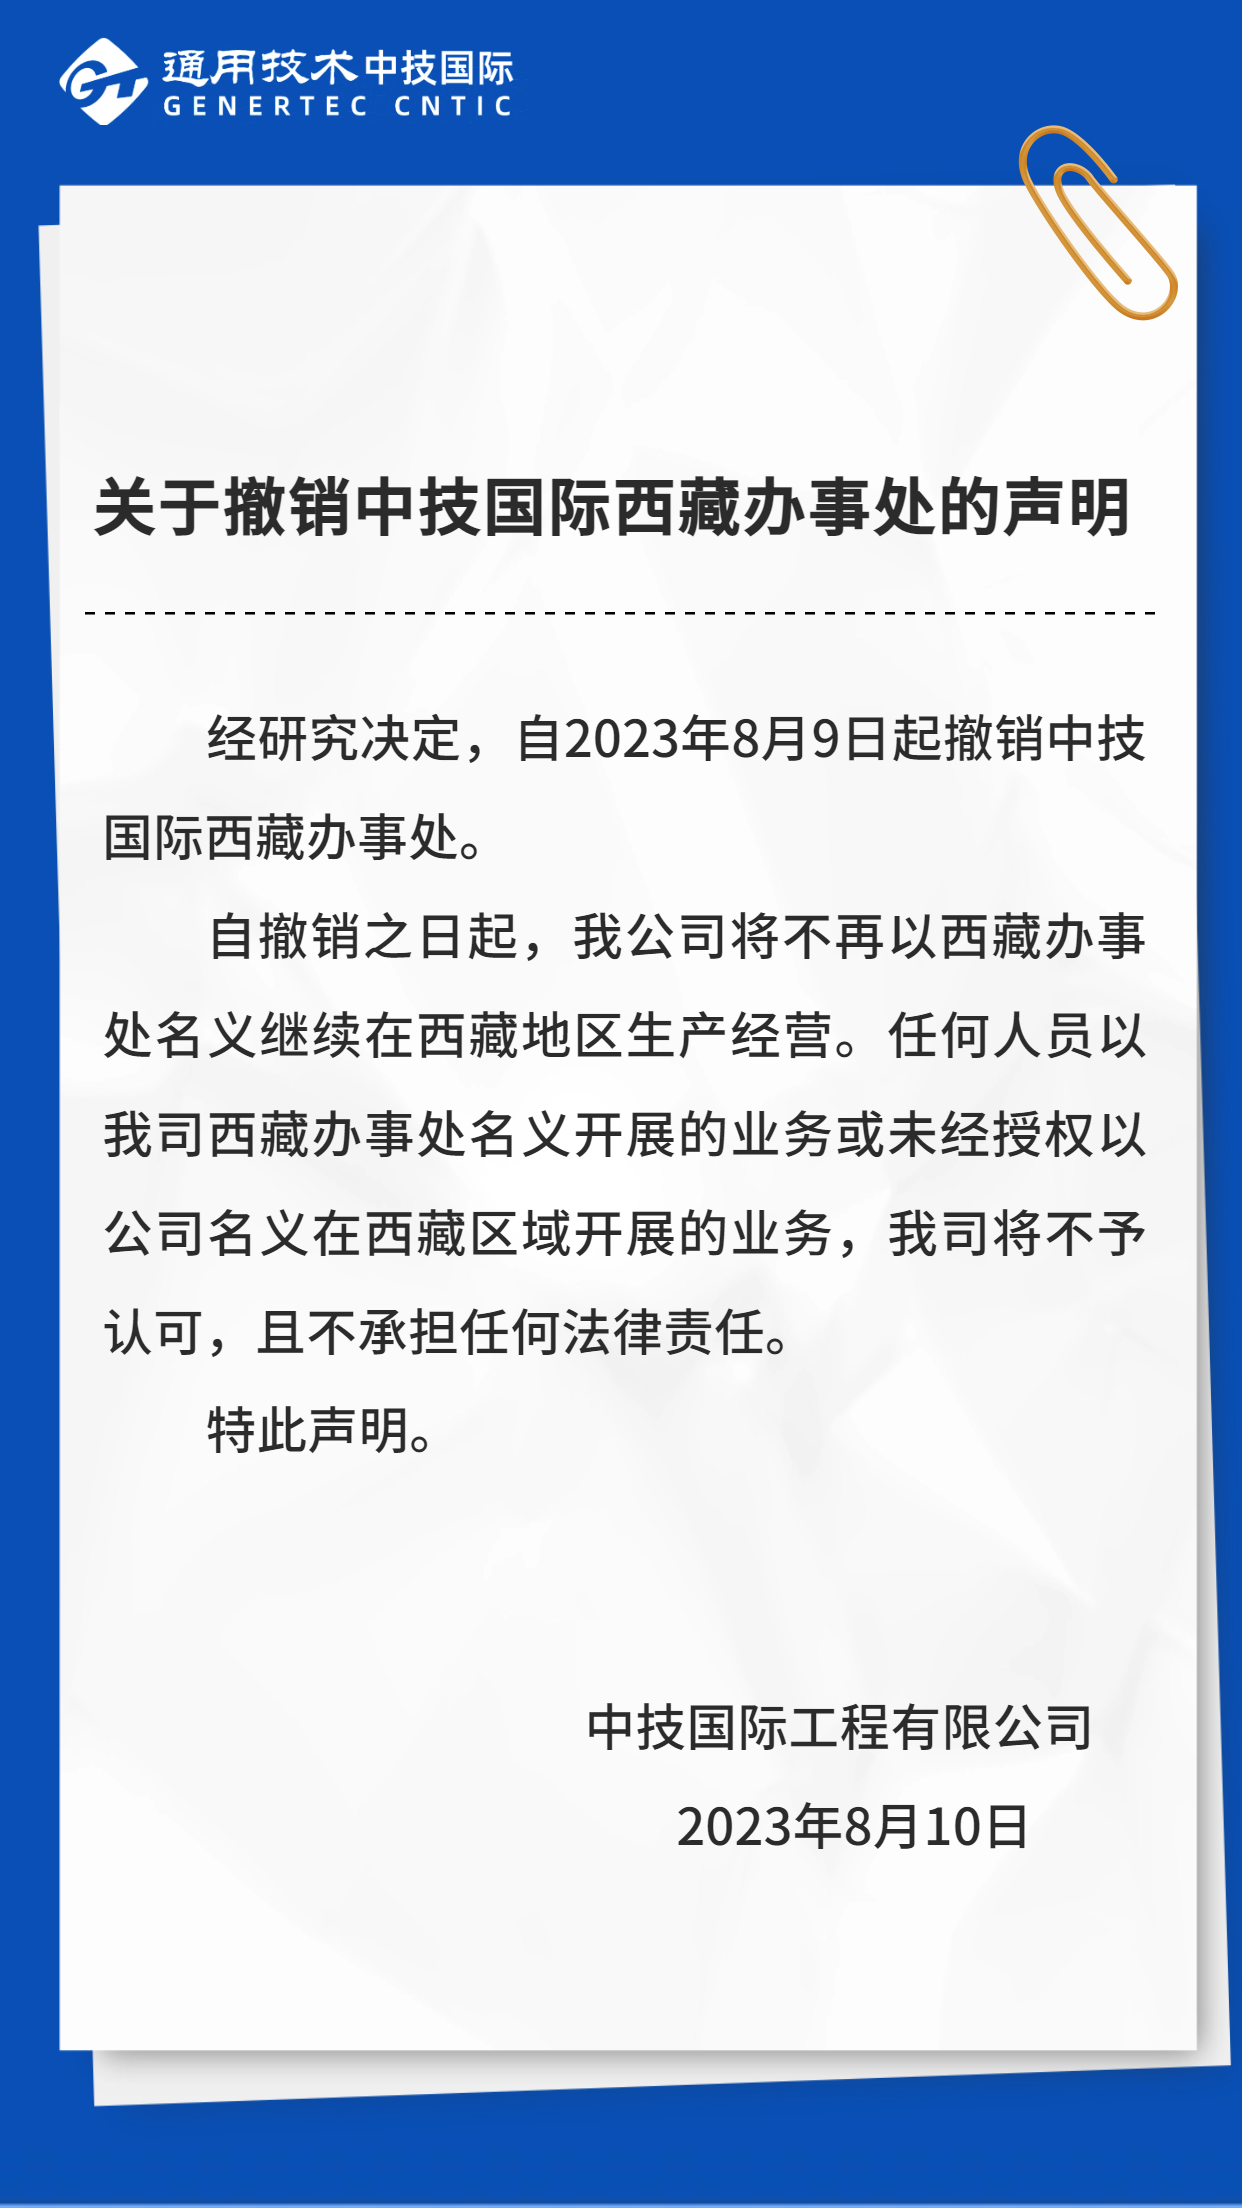 关于撤销中技国际西藏办事处的声明